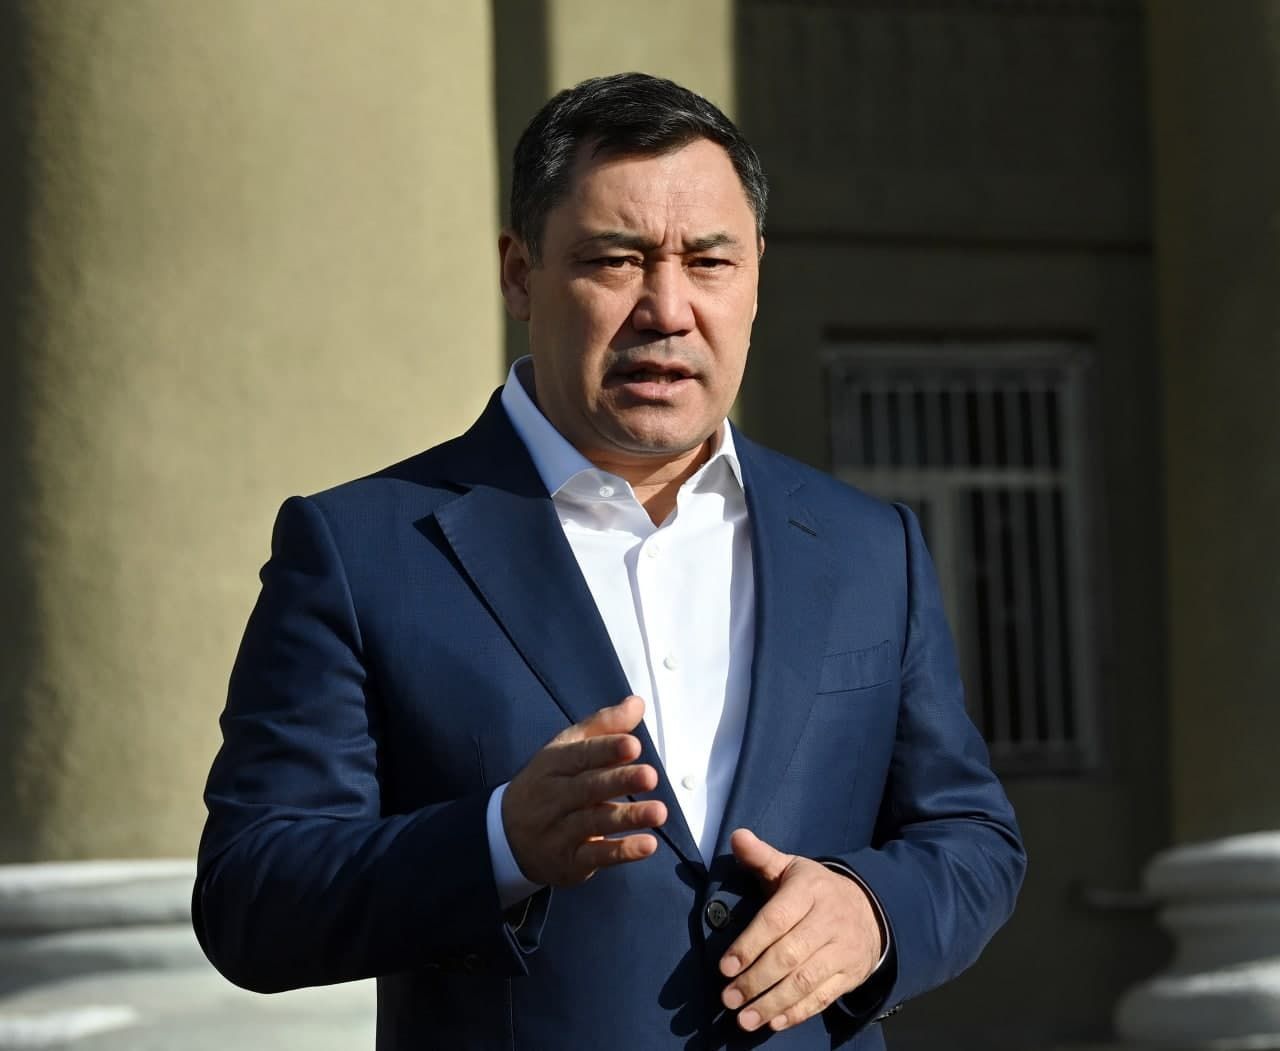 Президент Садыр Жапаров встретился с жителями жилмассива Жер - Ынтымак у здания Администрации президента в Бишкеке. 18 ноября 2021 года